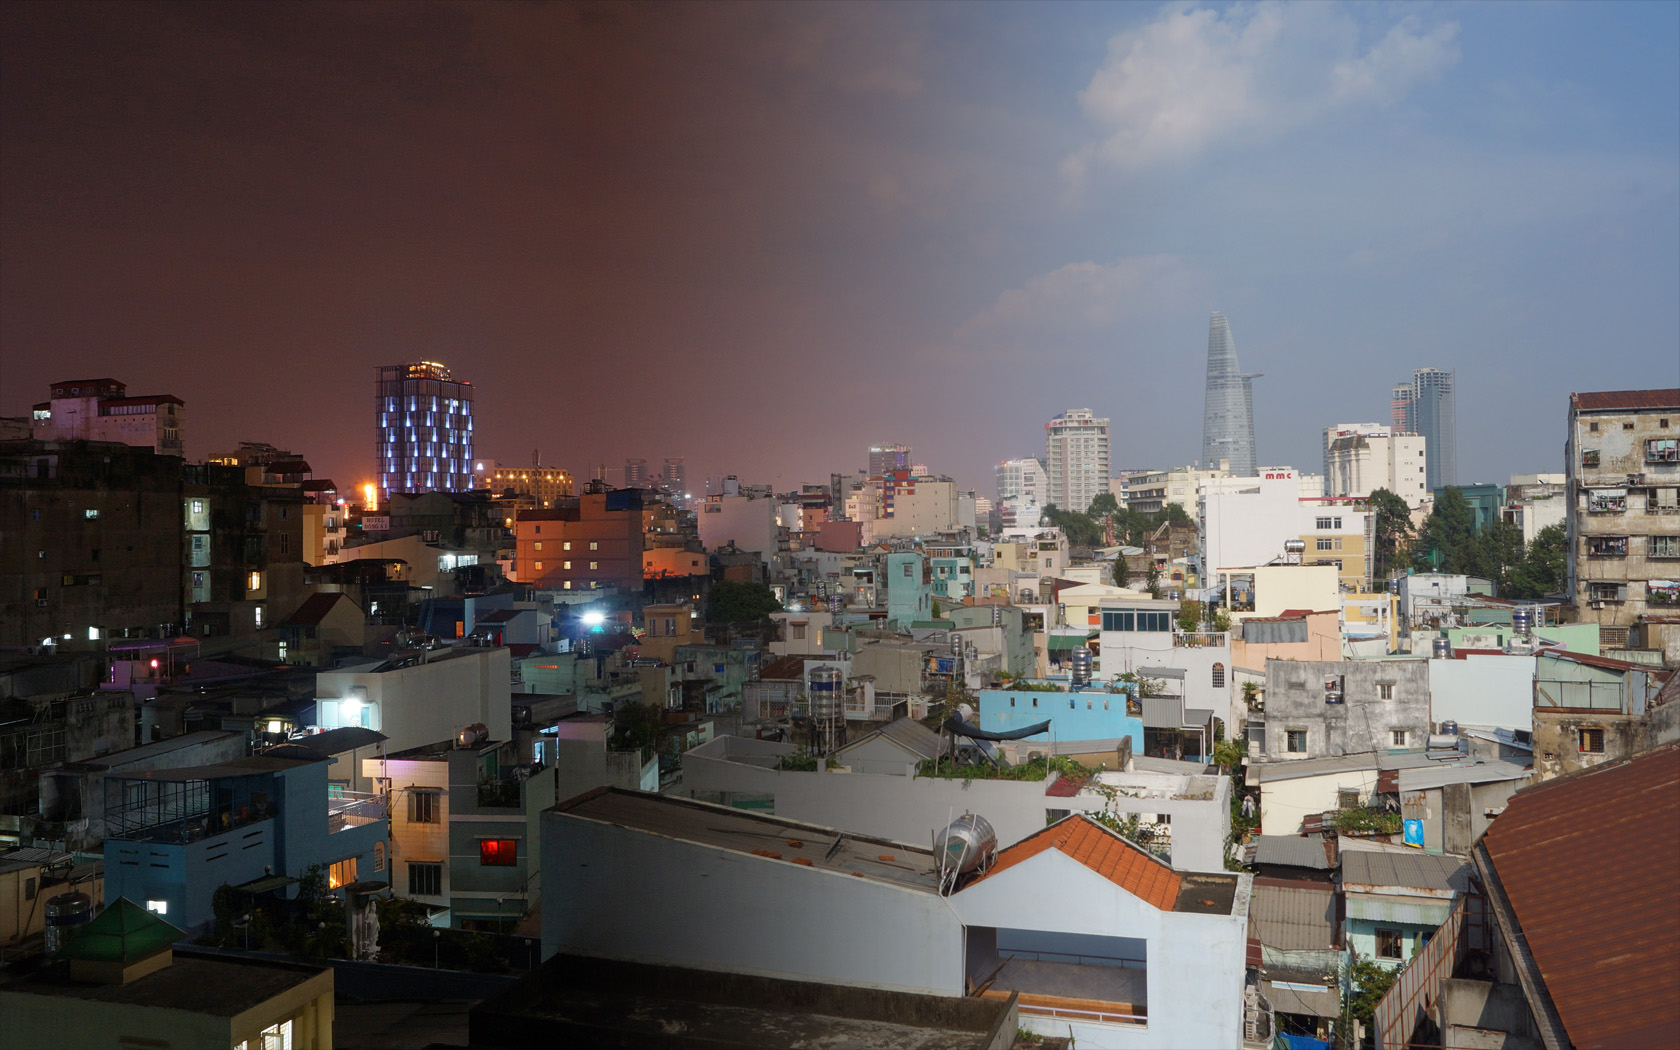 Night'n'day in Saigon